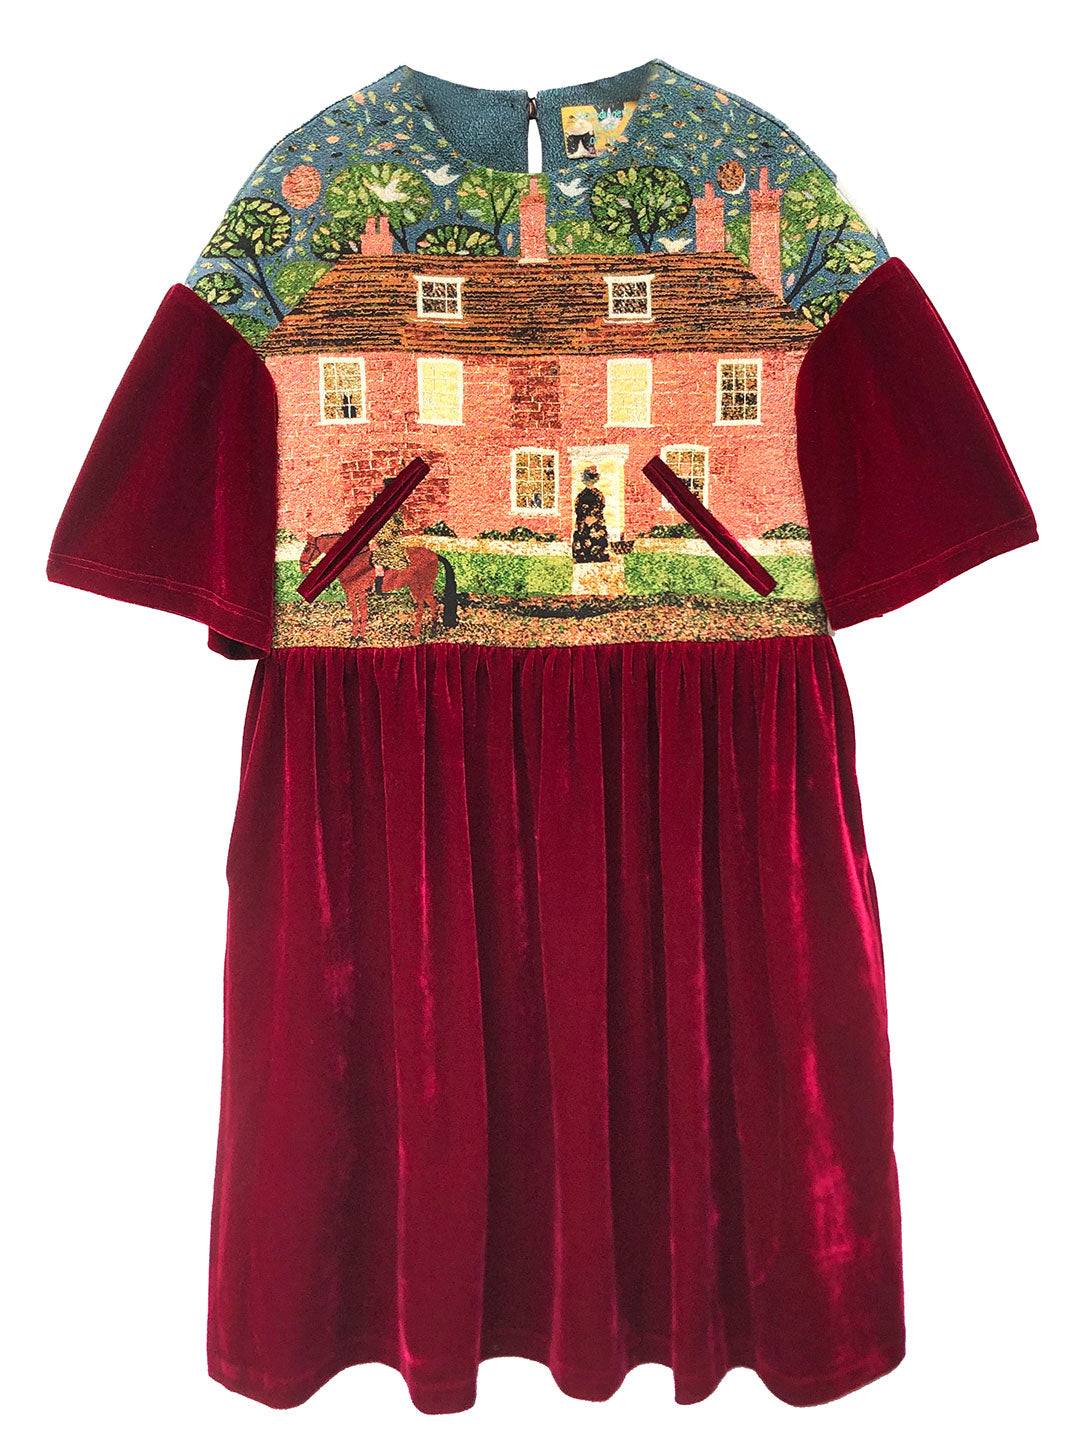 Unlogical Poem Jane Austen House Velvet Dress